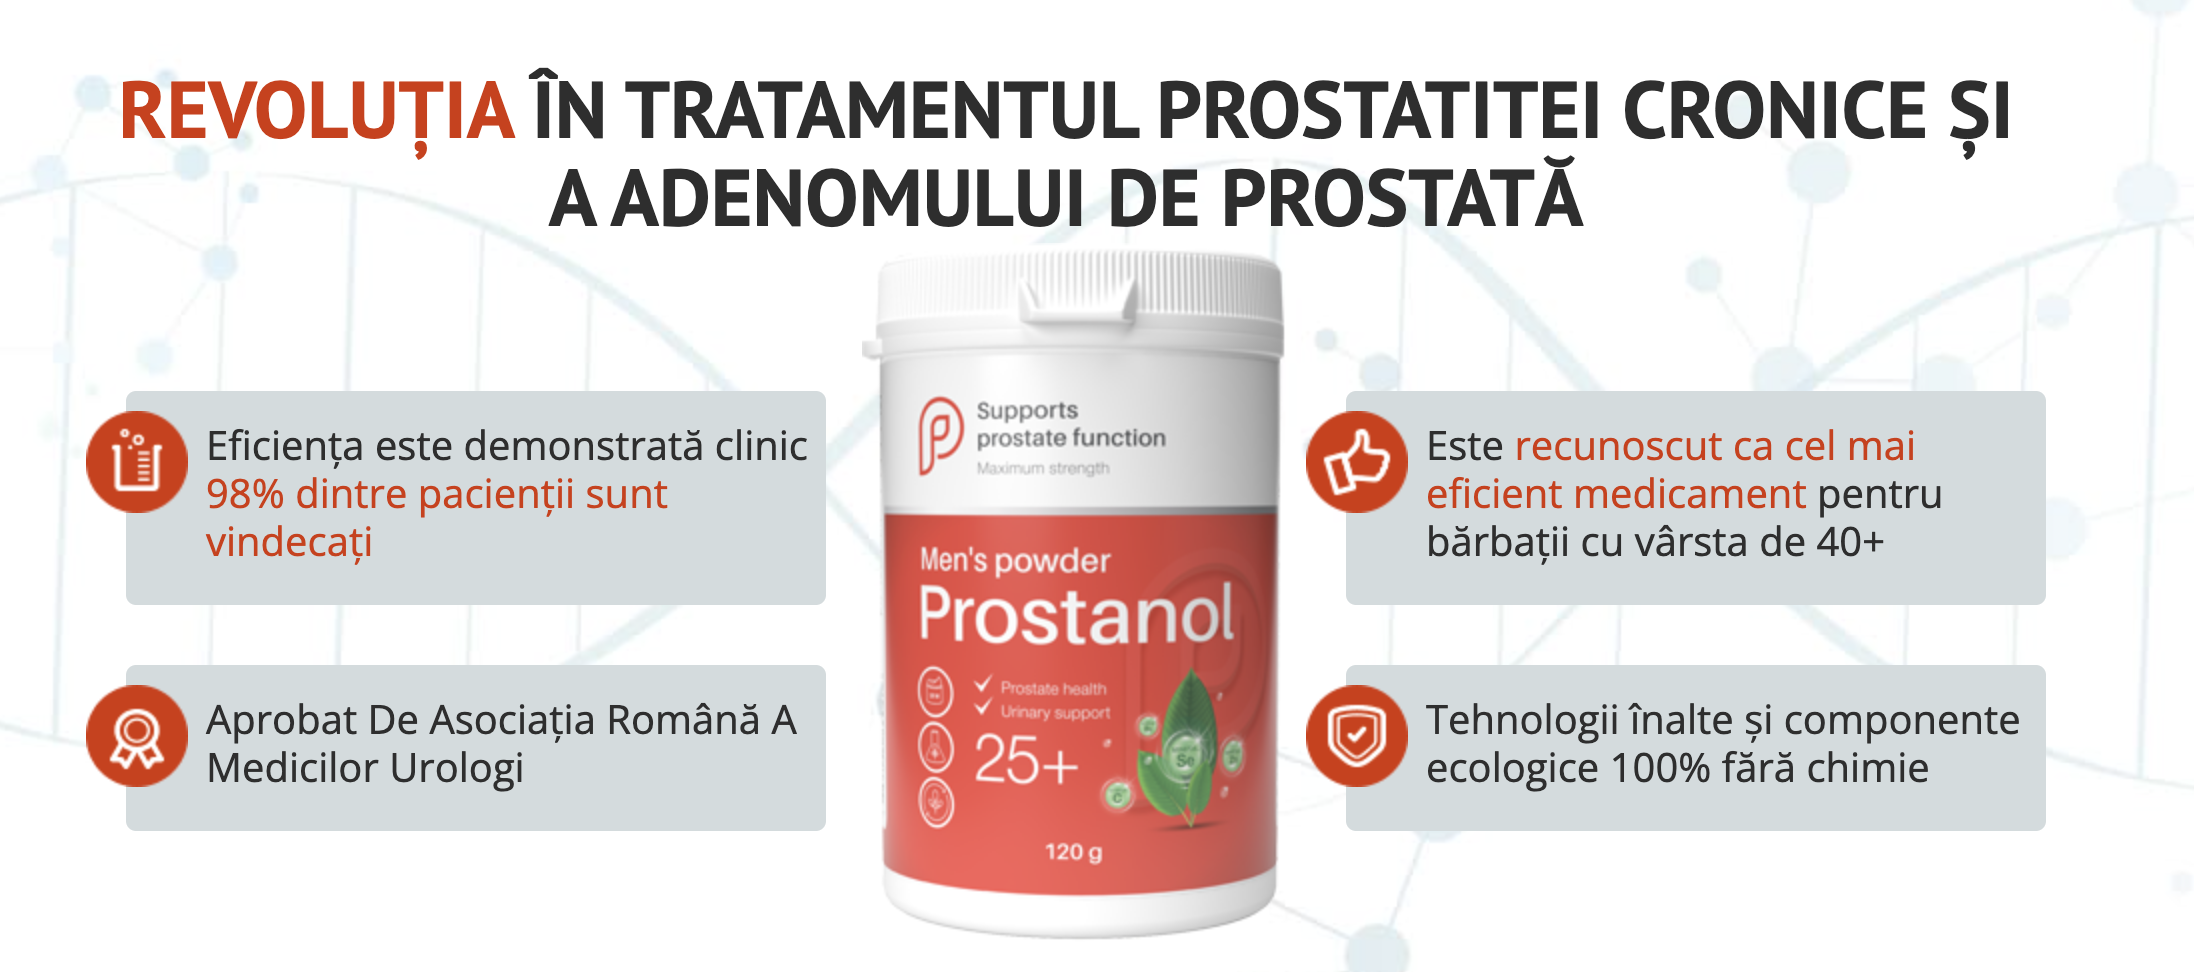 Prostanol este un supliment natural destinat sănătății prostate